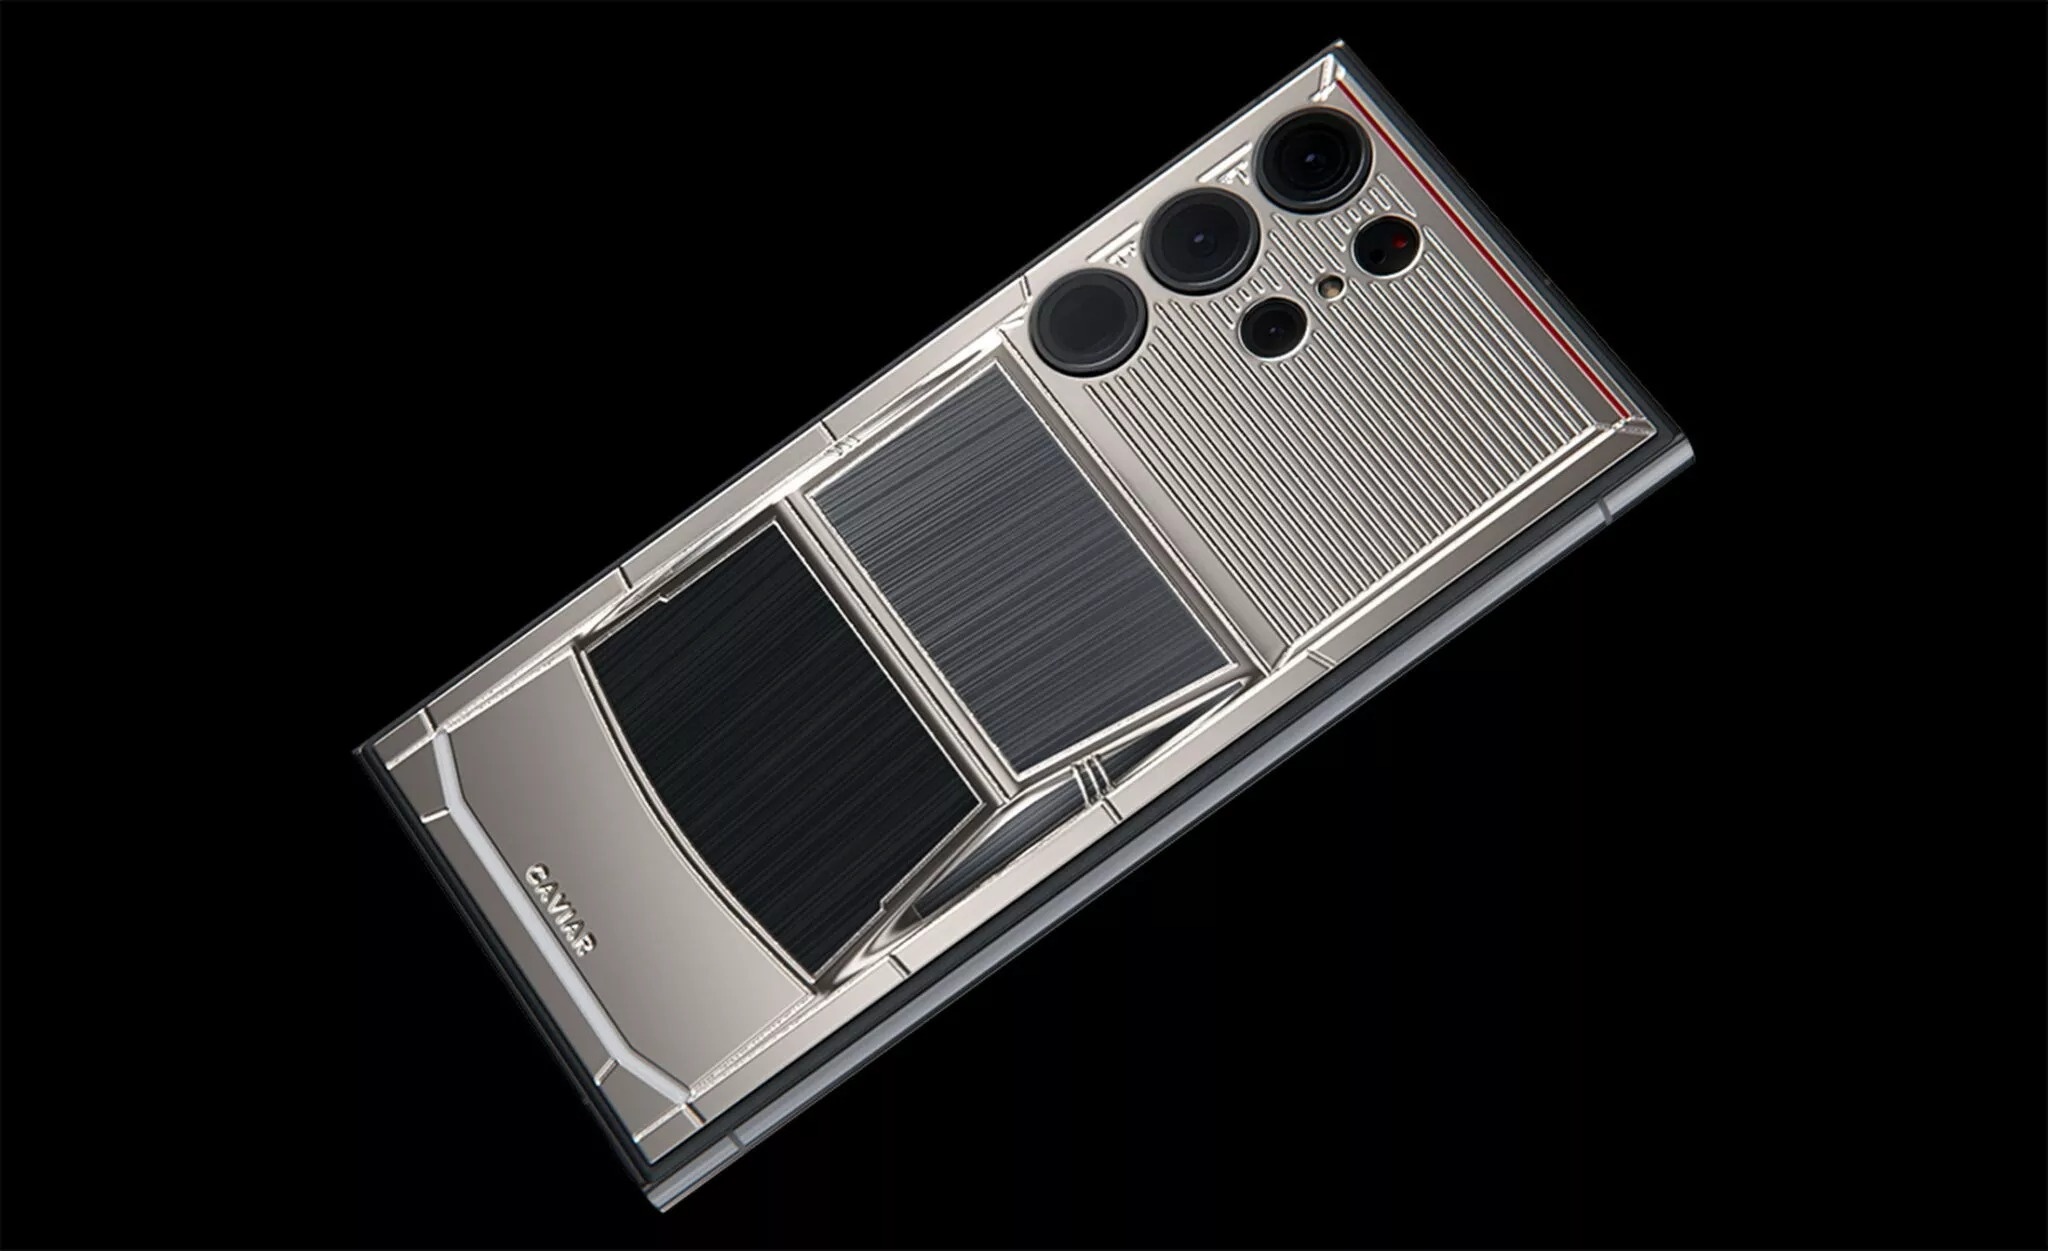 Lấy cảm hứng từ Tesla Cybertruck, điện thoại này có giá gần 9.000 USD - ảnh 2